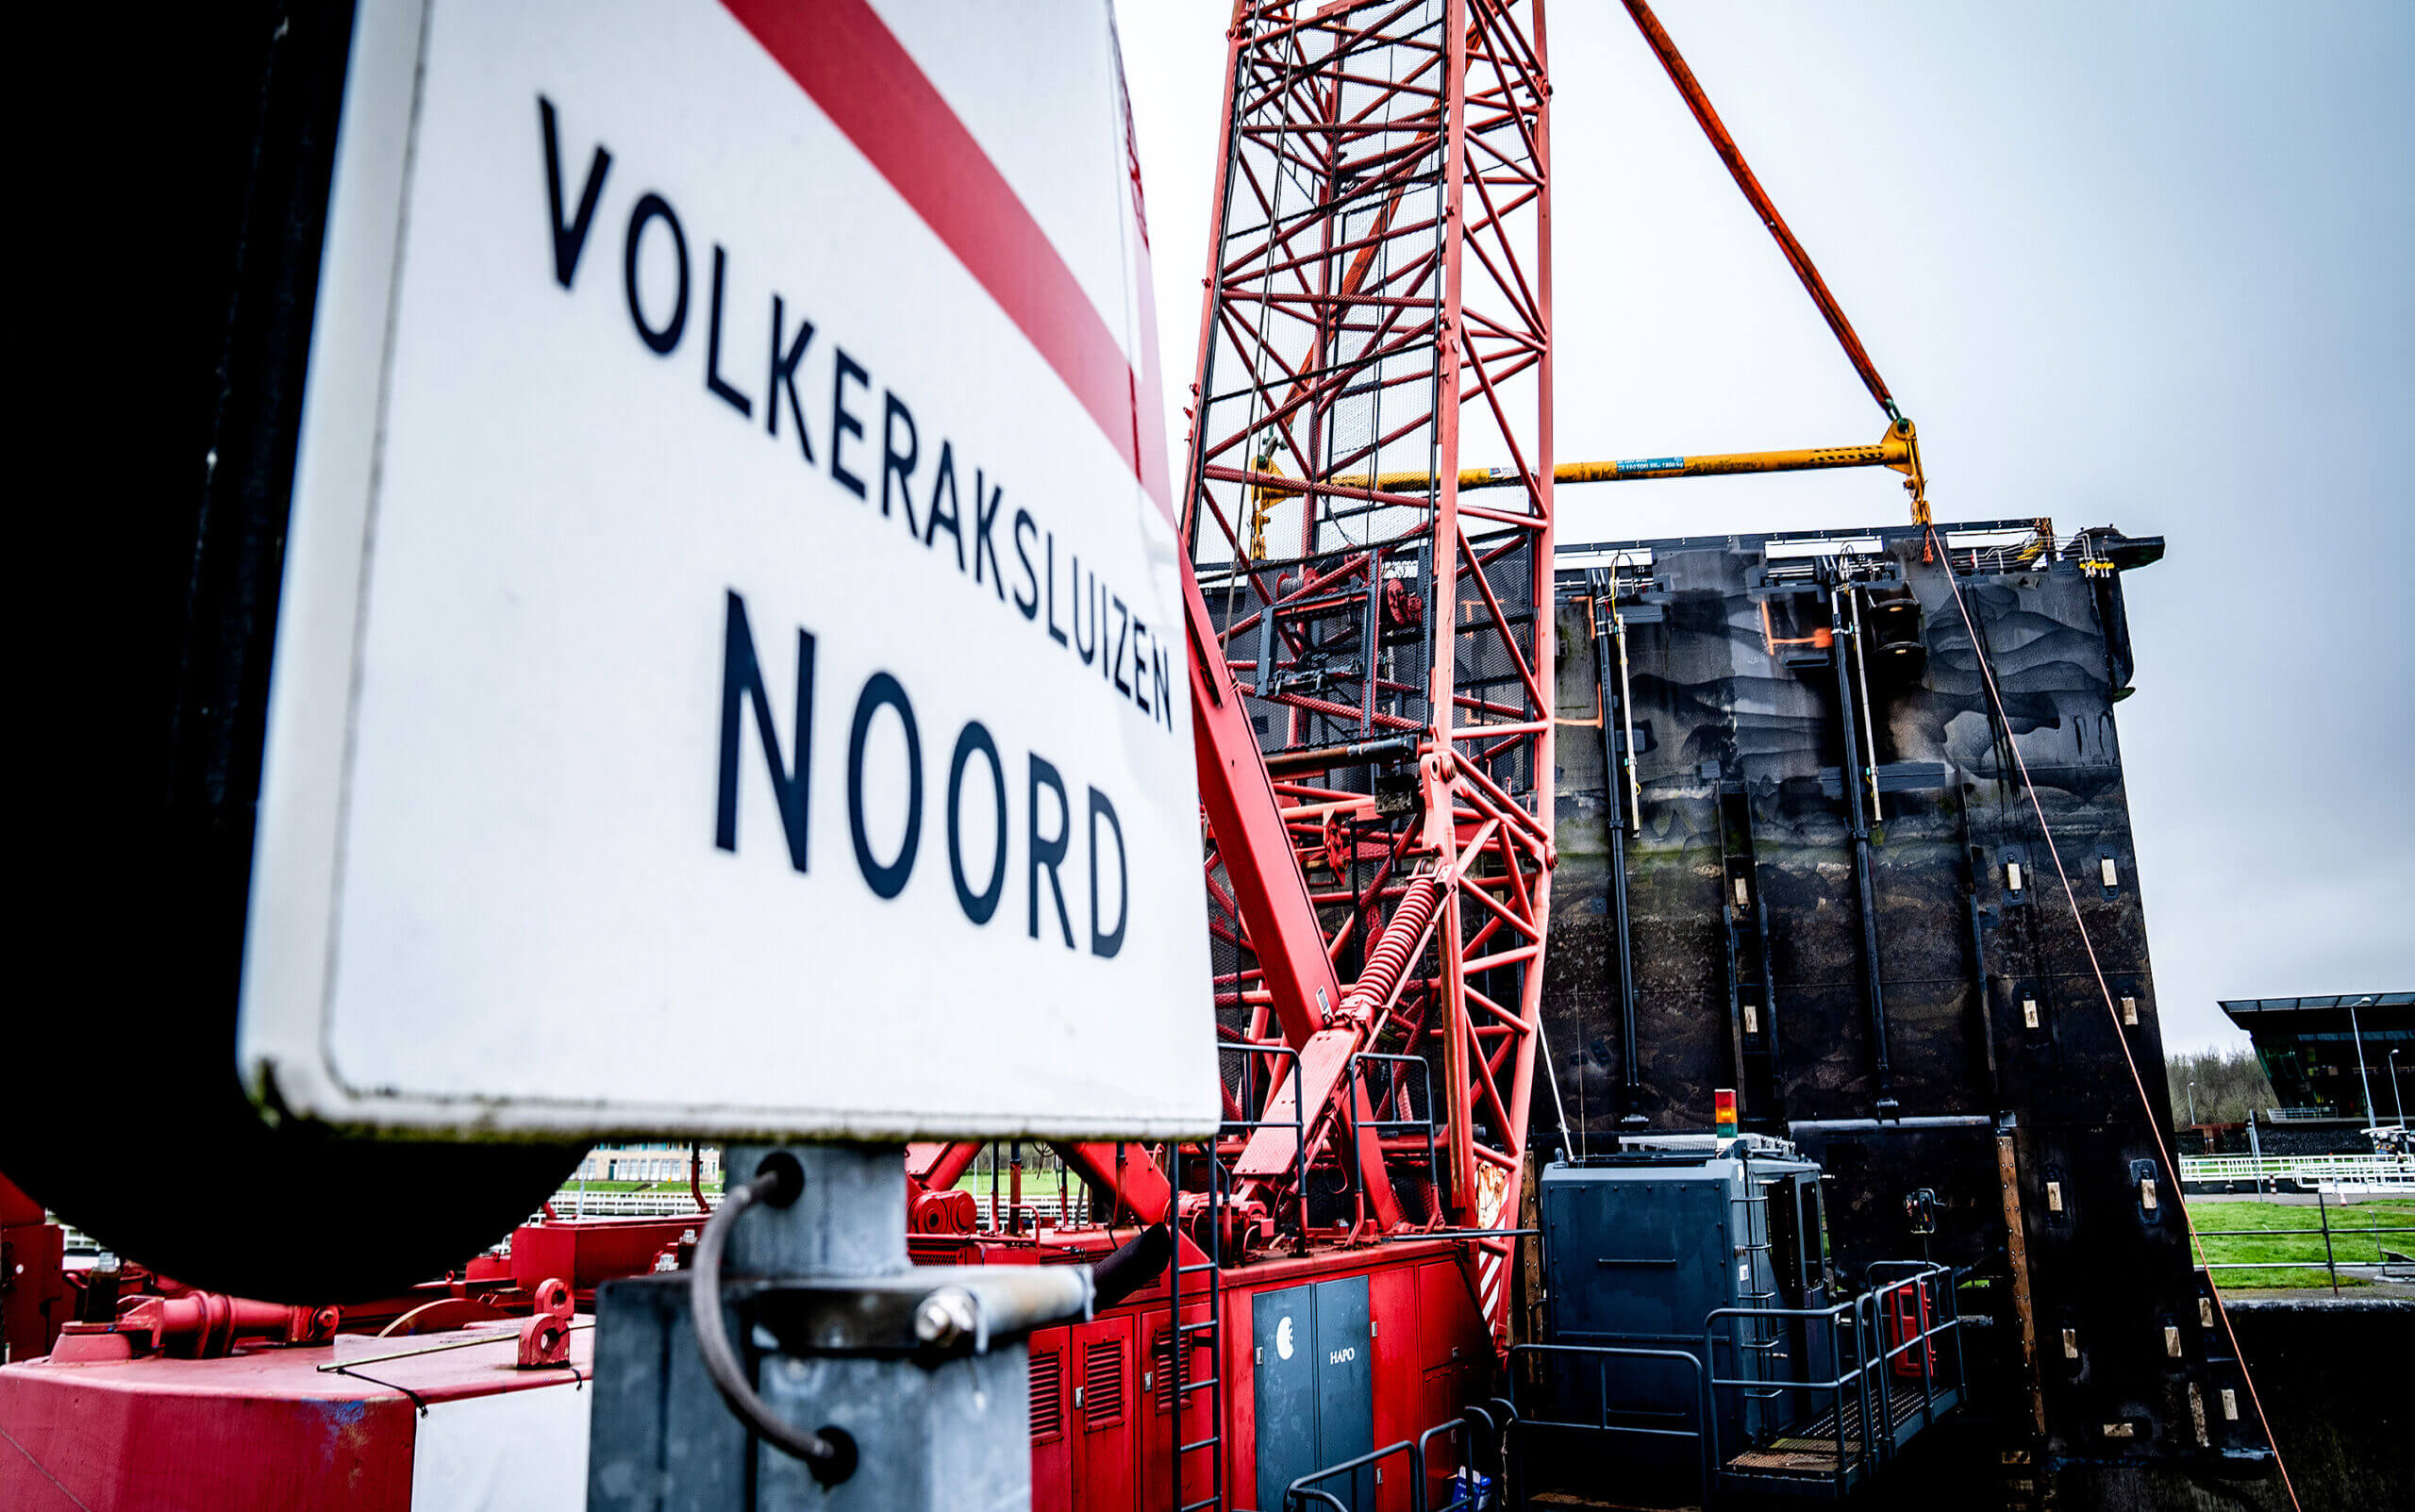 Sign of Volkeraksluizen Noord